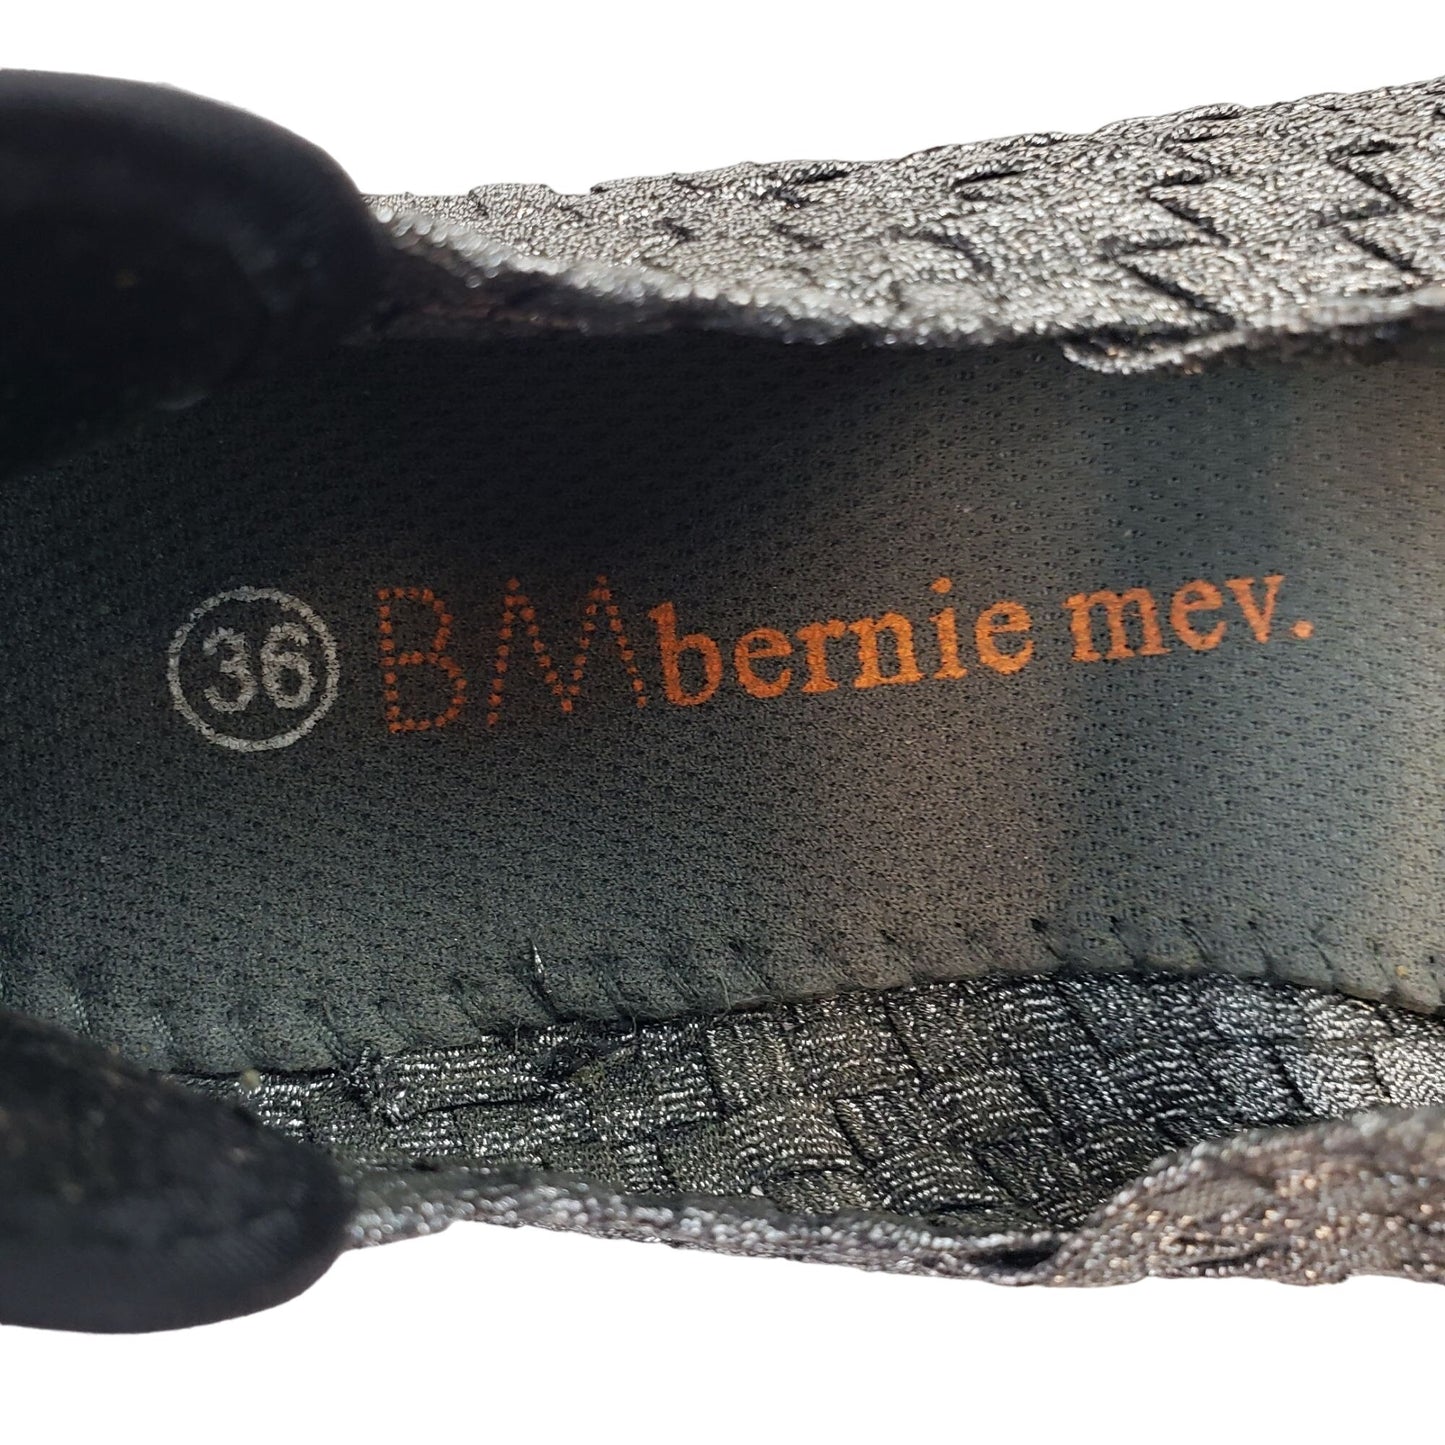 Bernie Mev Cuddly Silver Metallic Woven Shoes Size EU 36/US 5